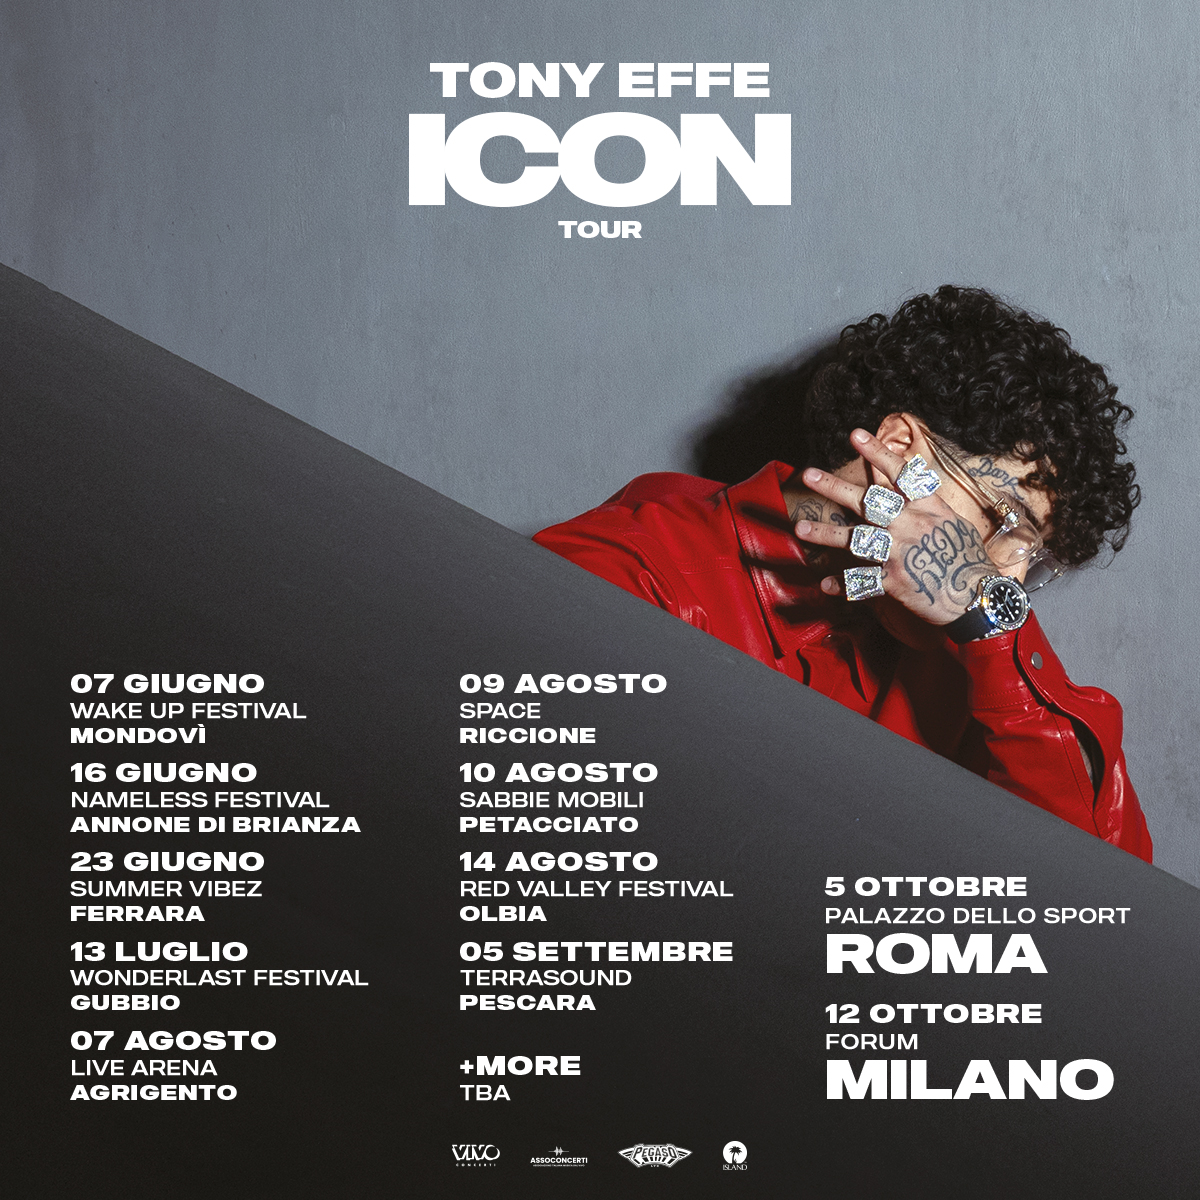 ICON TOUR Tony Effe